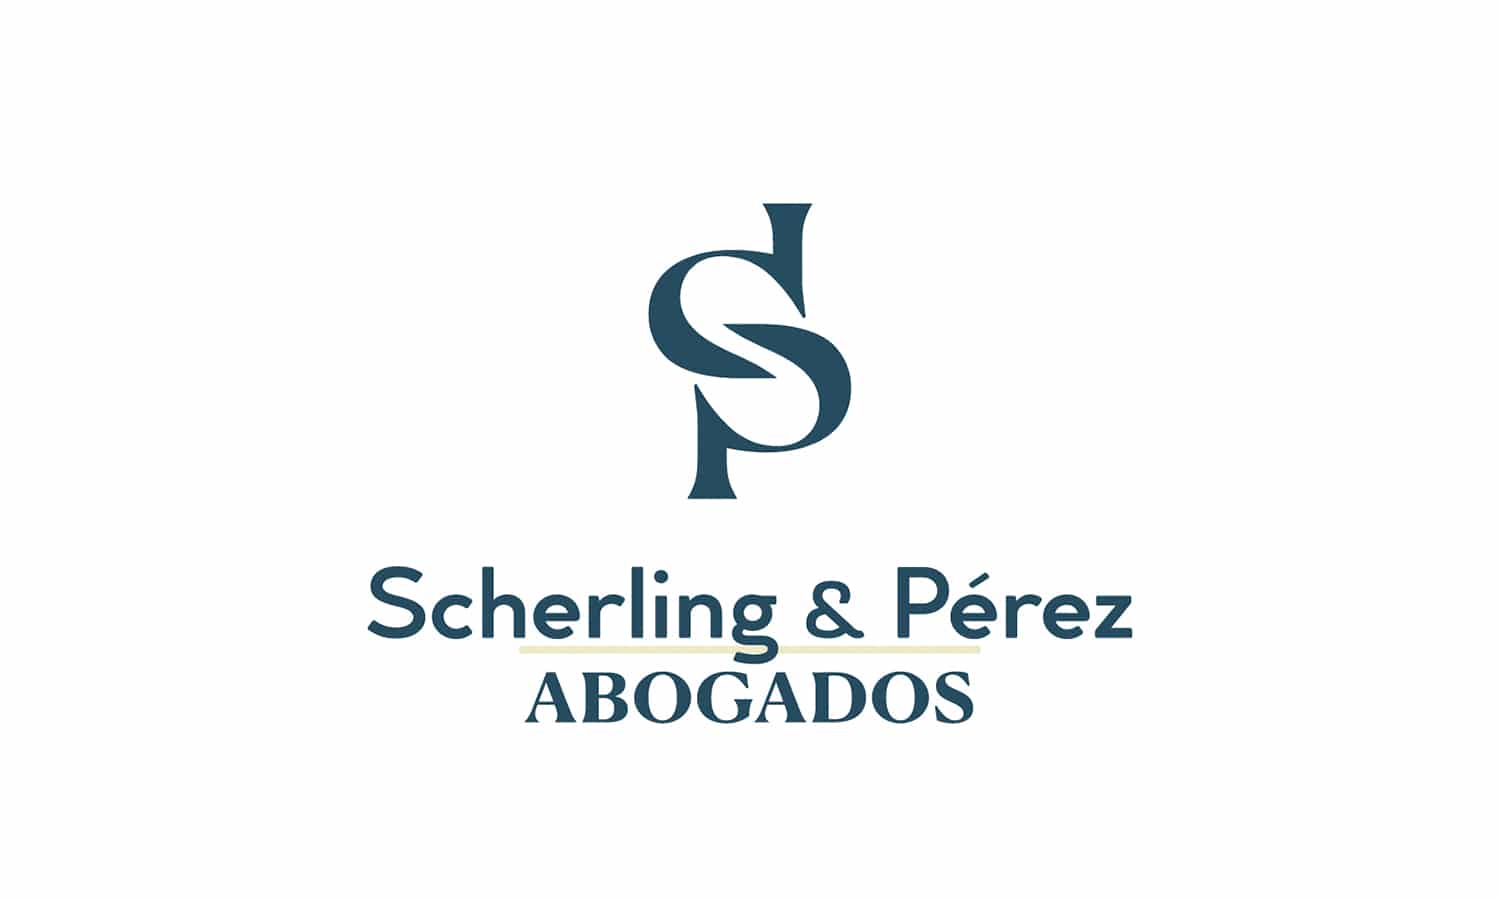 Diseño de logotipo creado para Scherling & Pérez Abogado, versión principal de logotipo